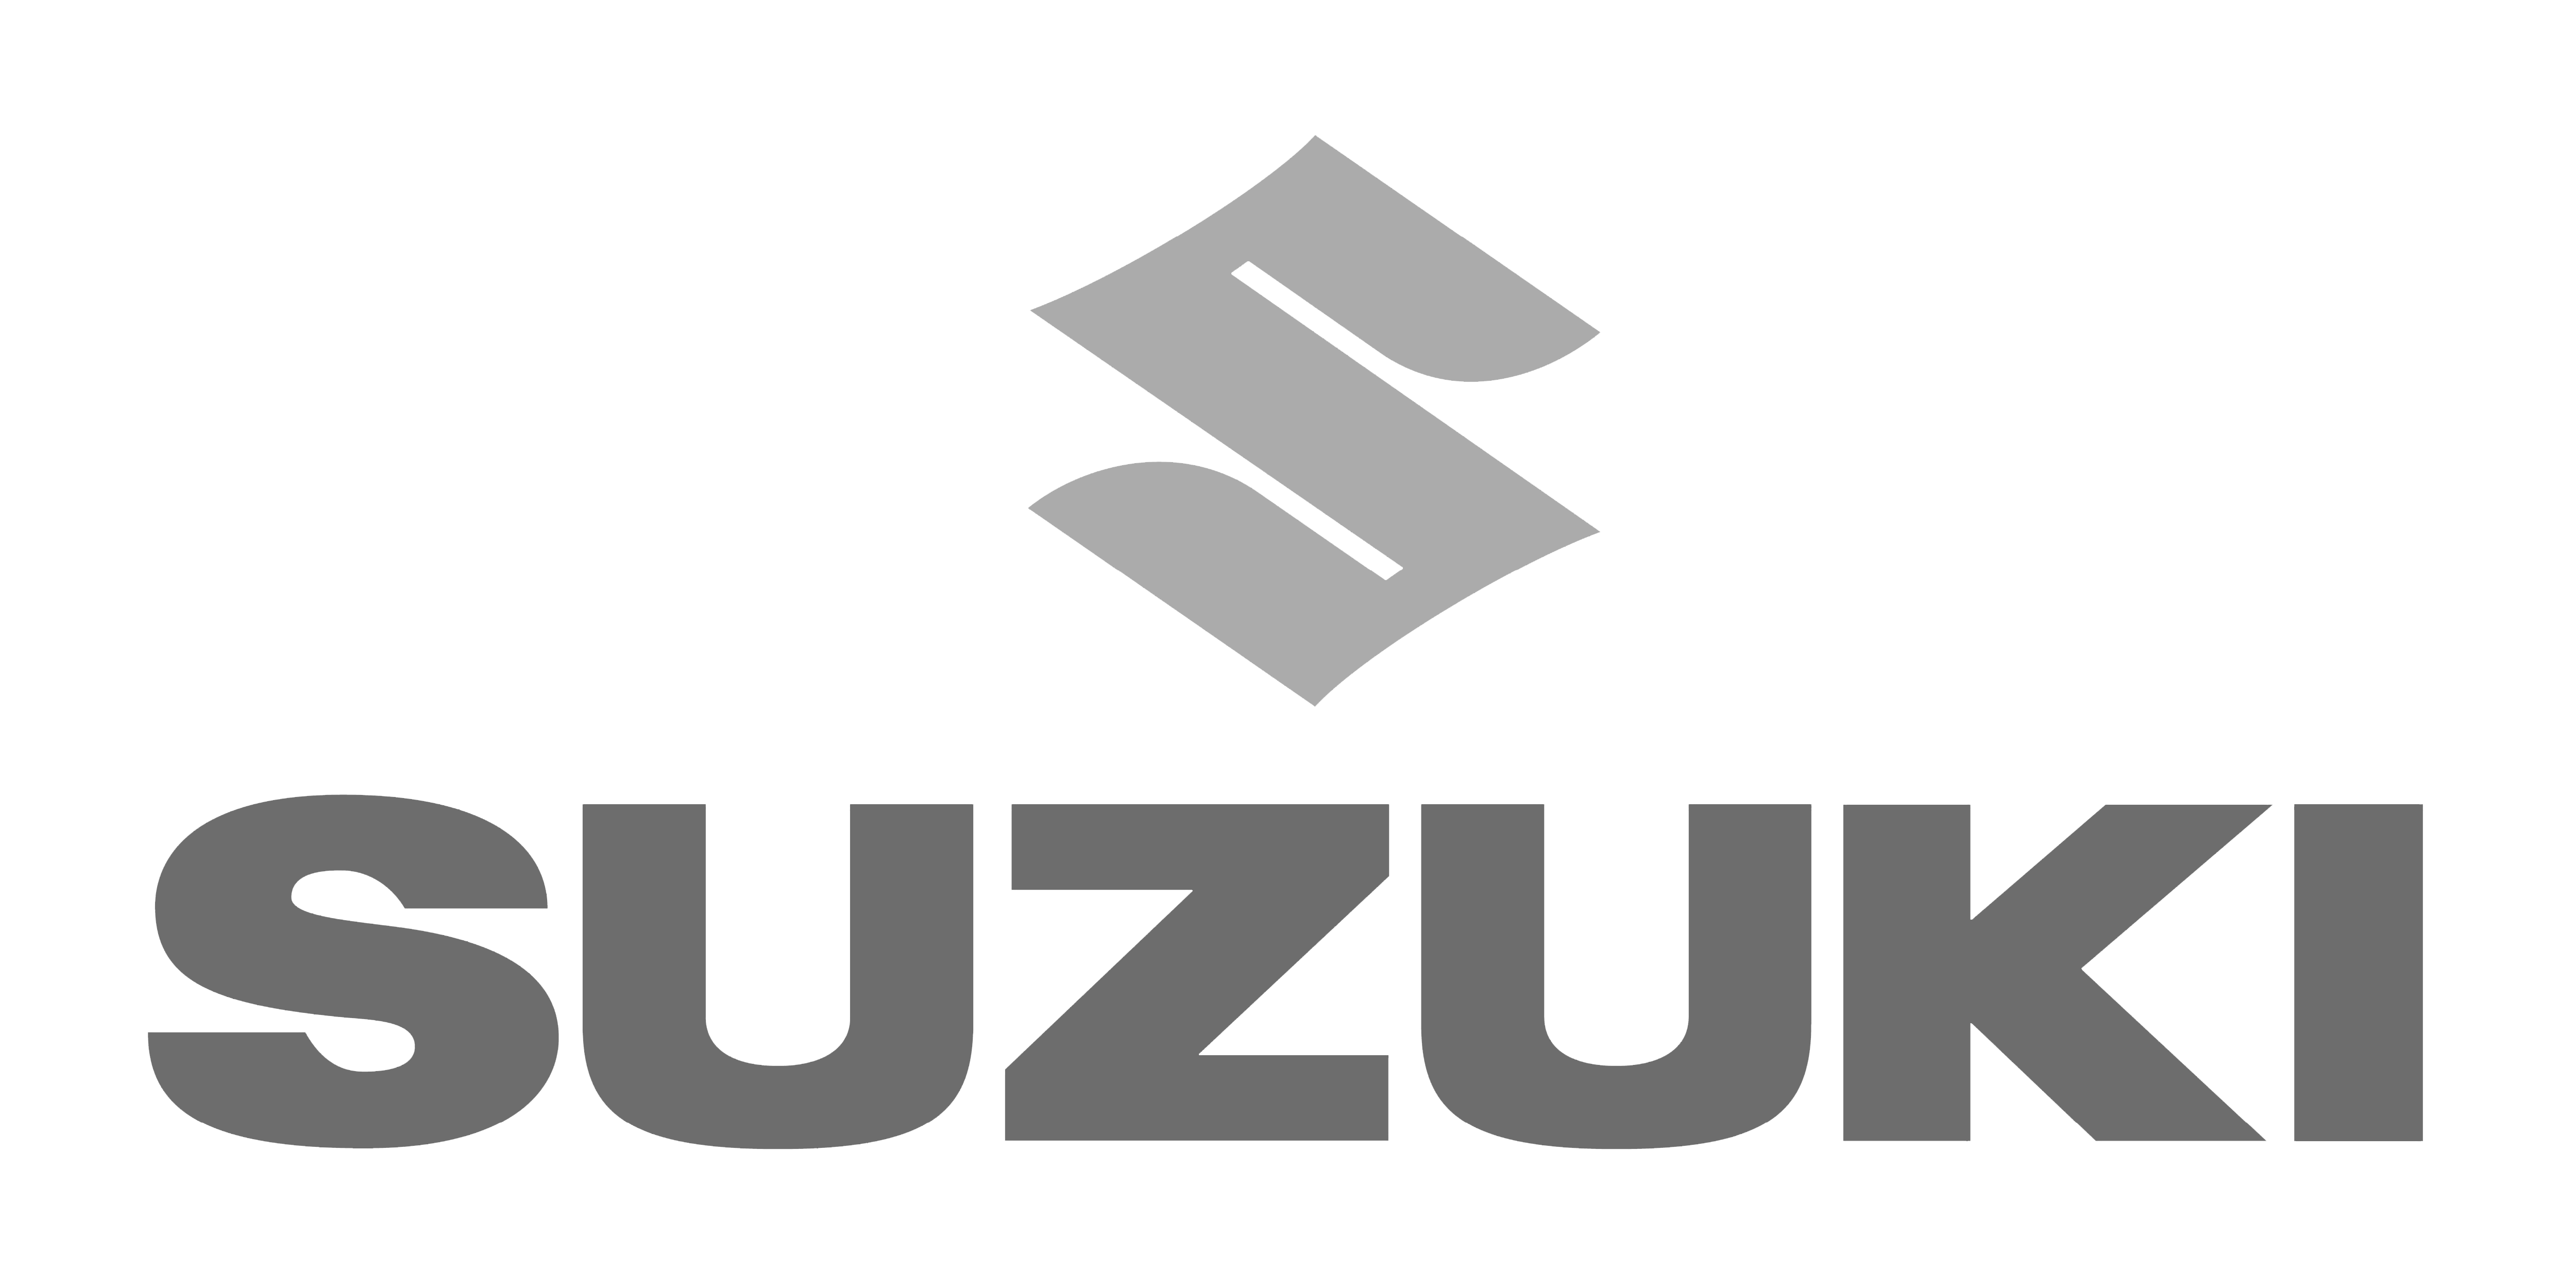 Suzuki-logo-5000x2500 BW